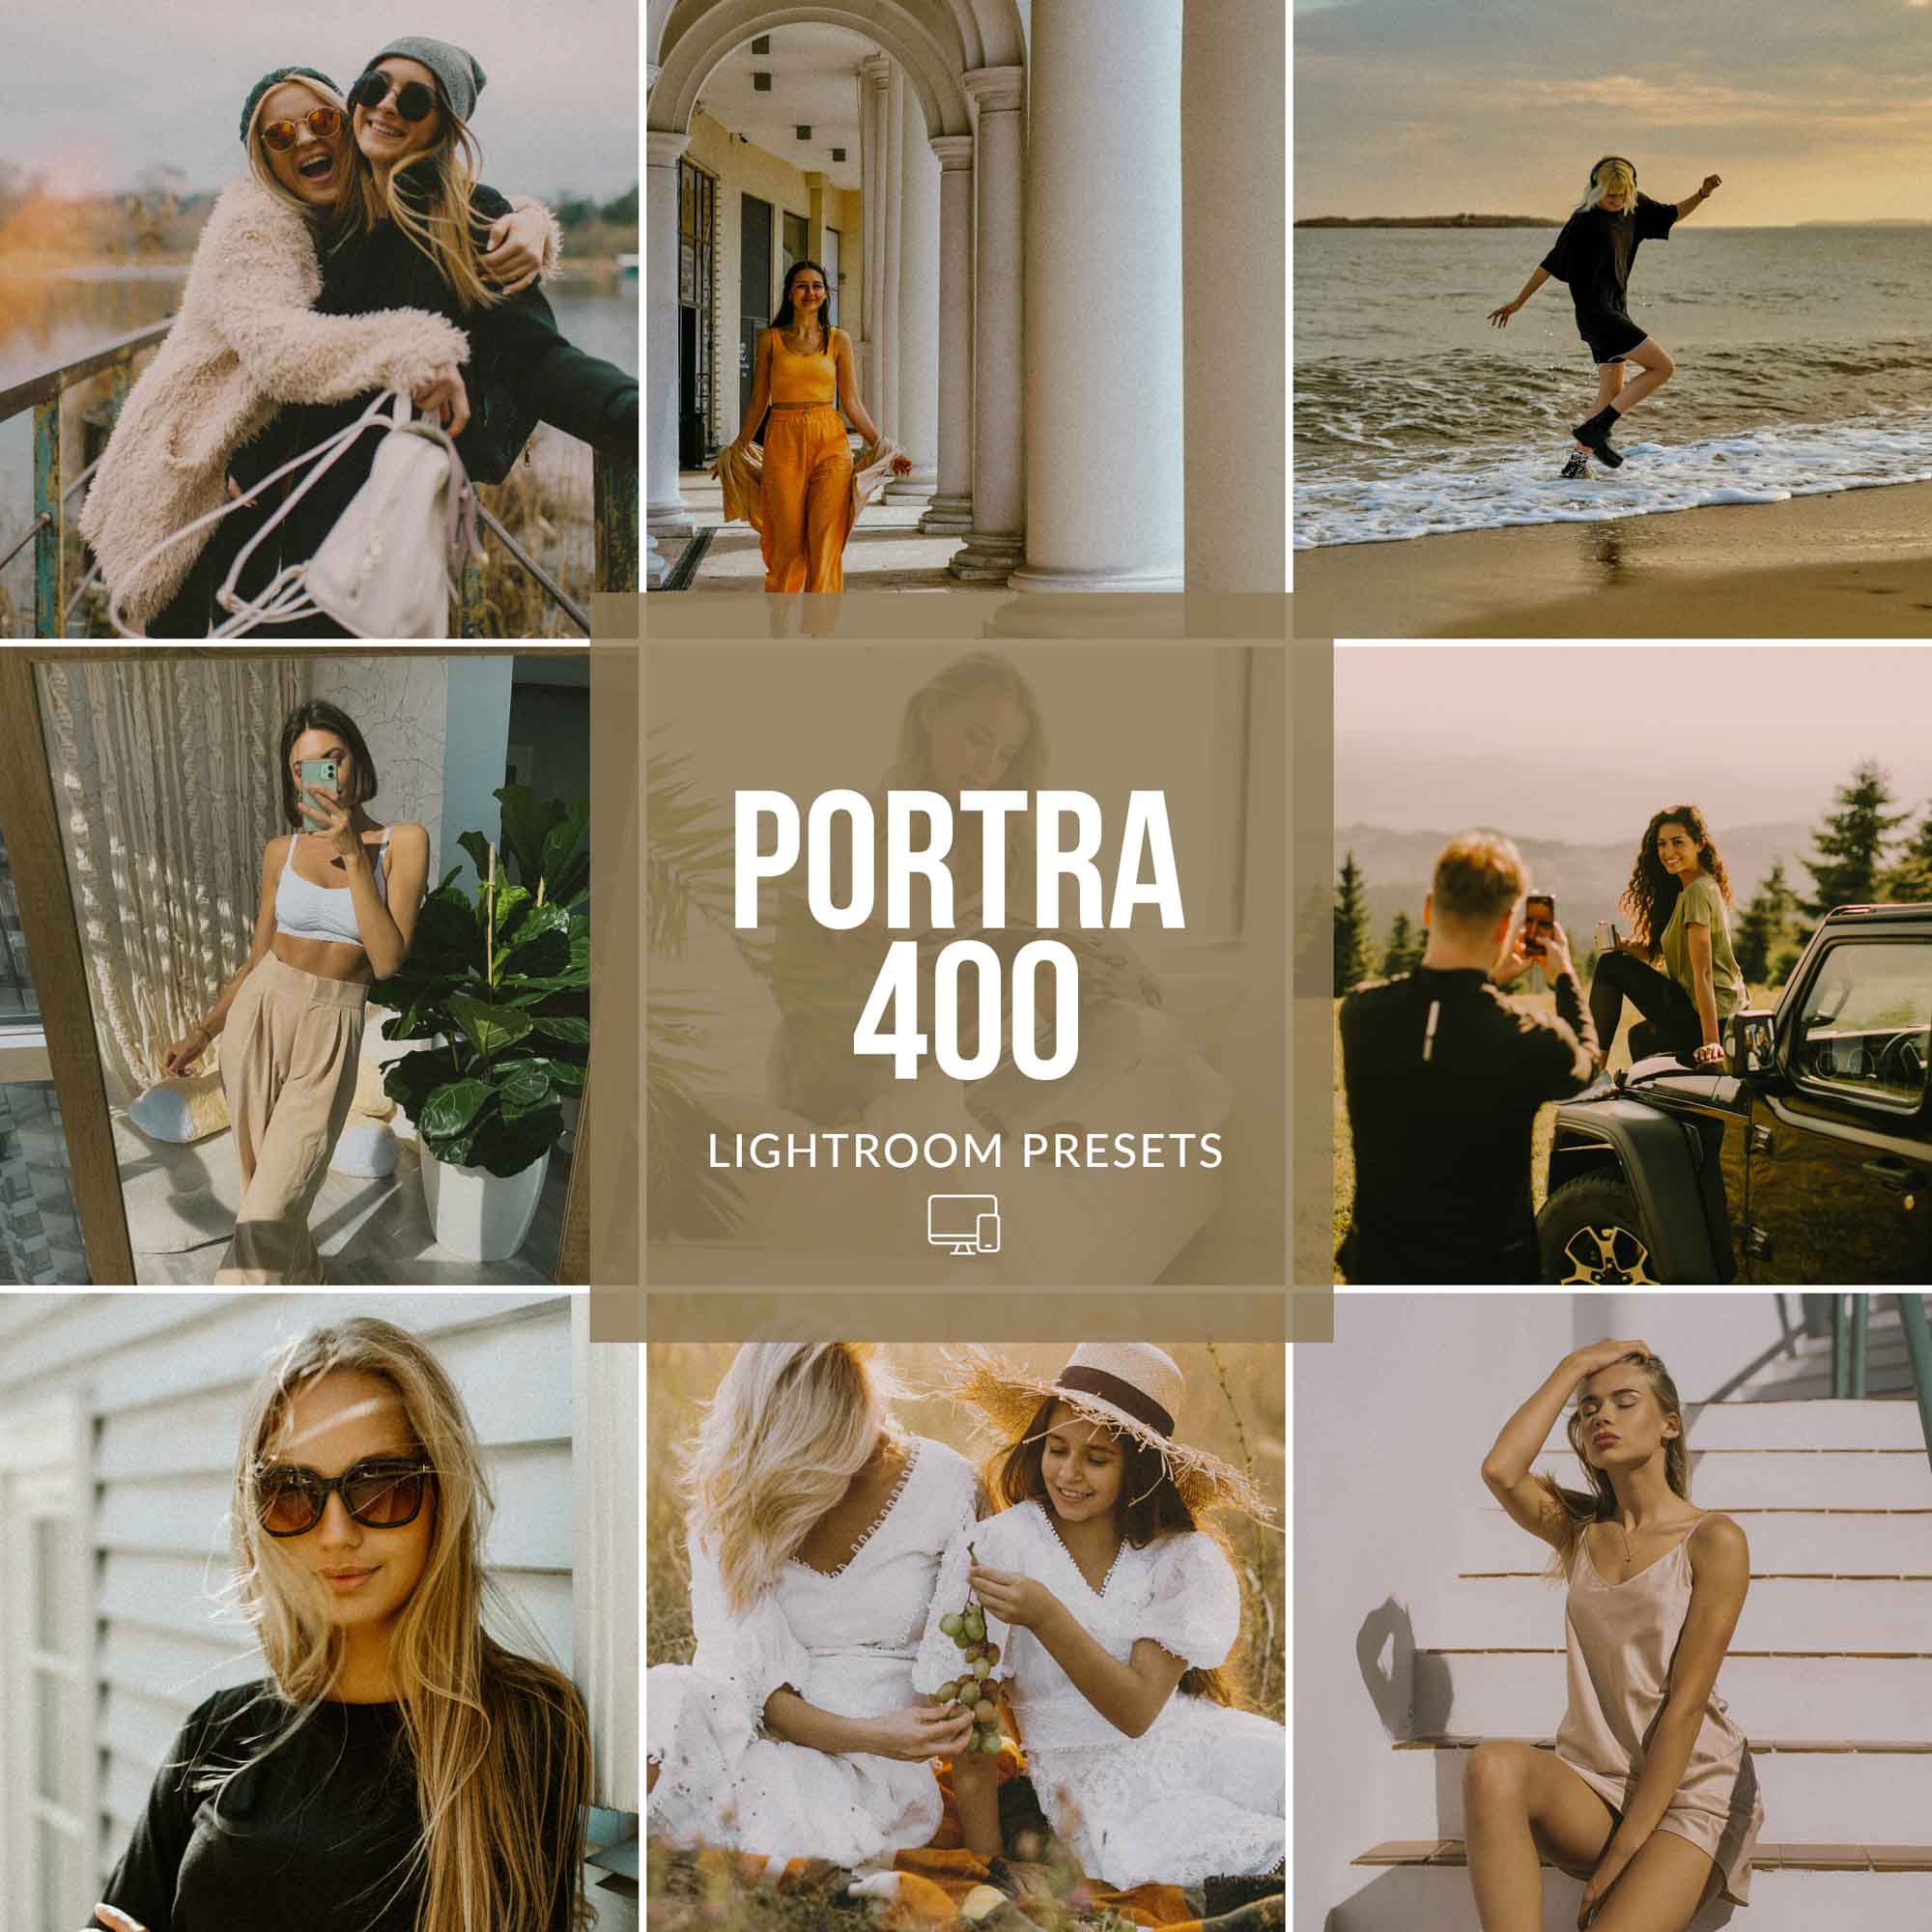 PORTRA 400 LIGHTROOM PRESETS